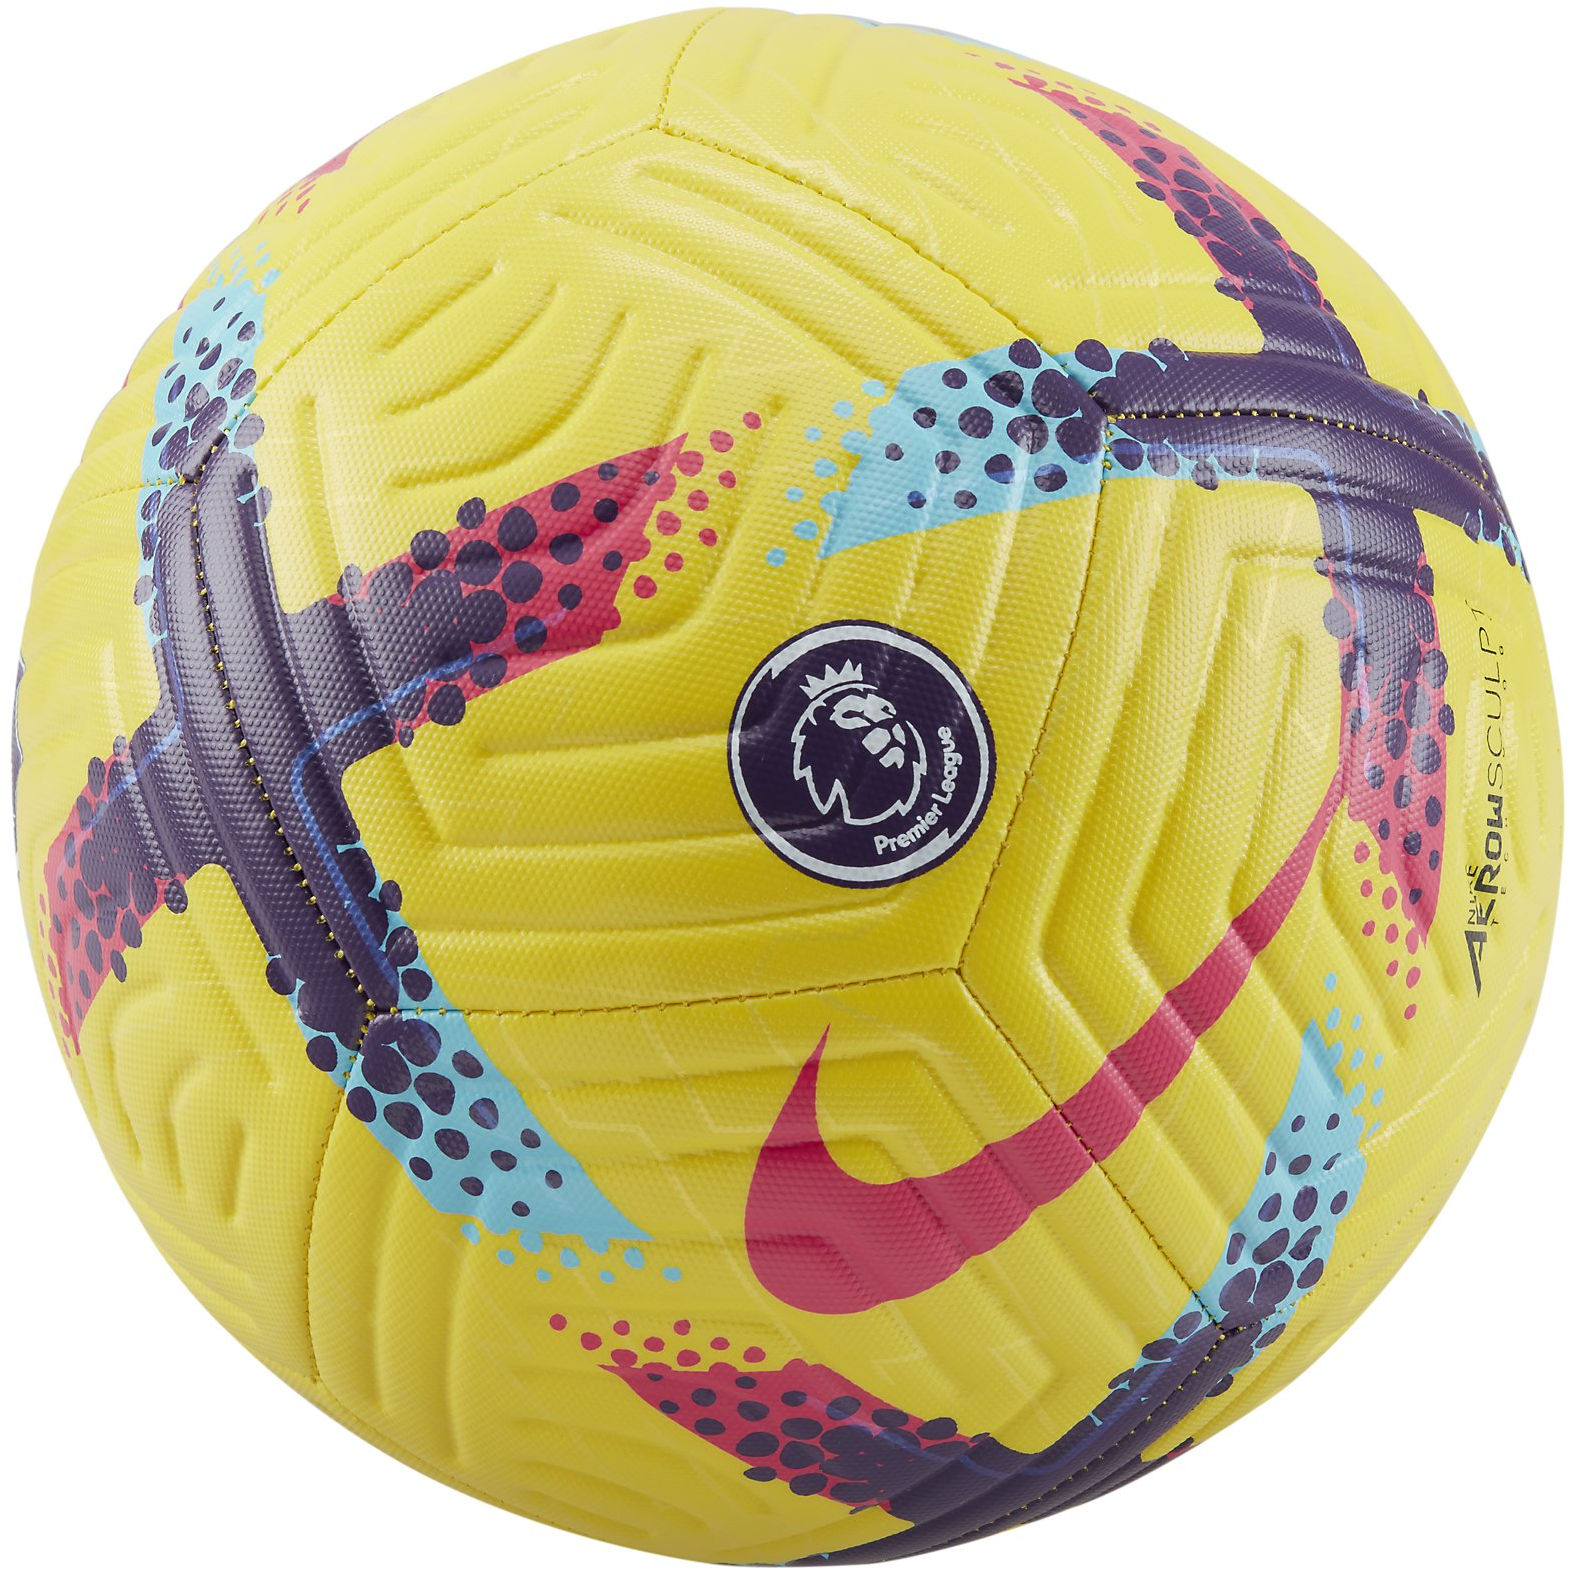 Bola the Nike Premier League Academy Soccer Ball